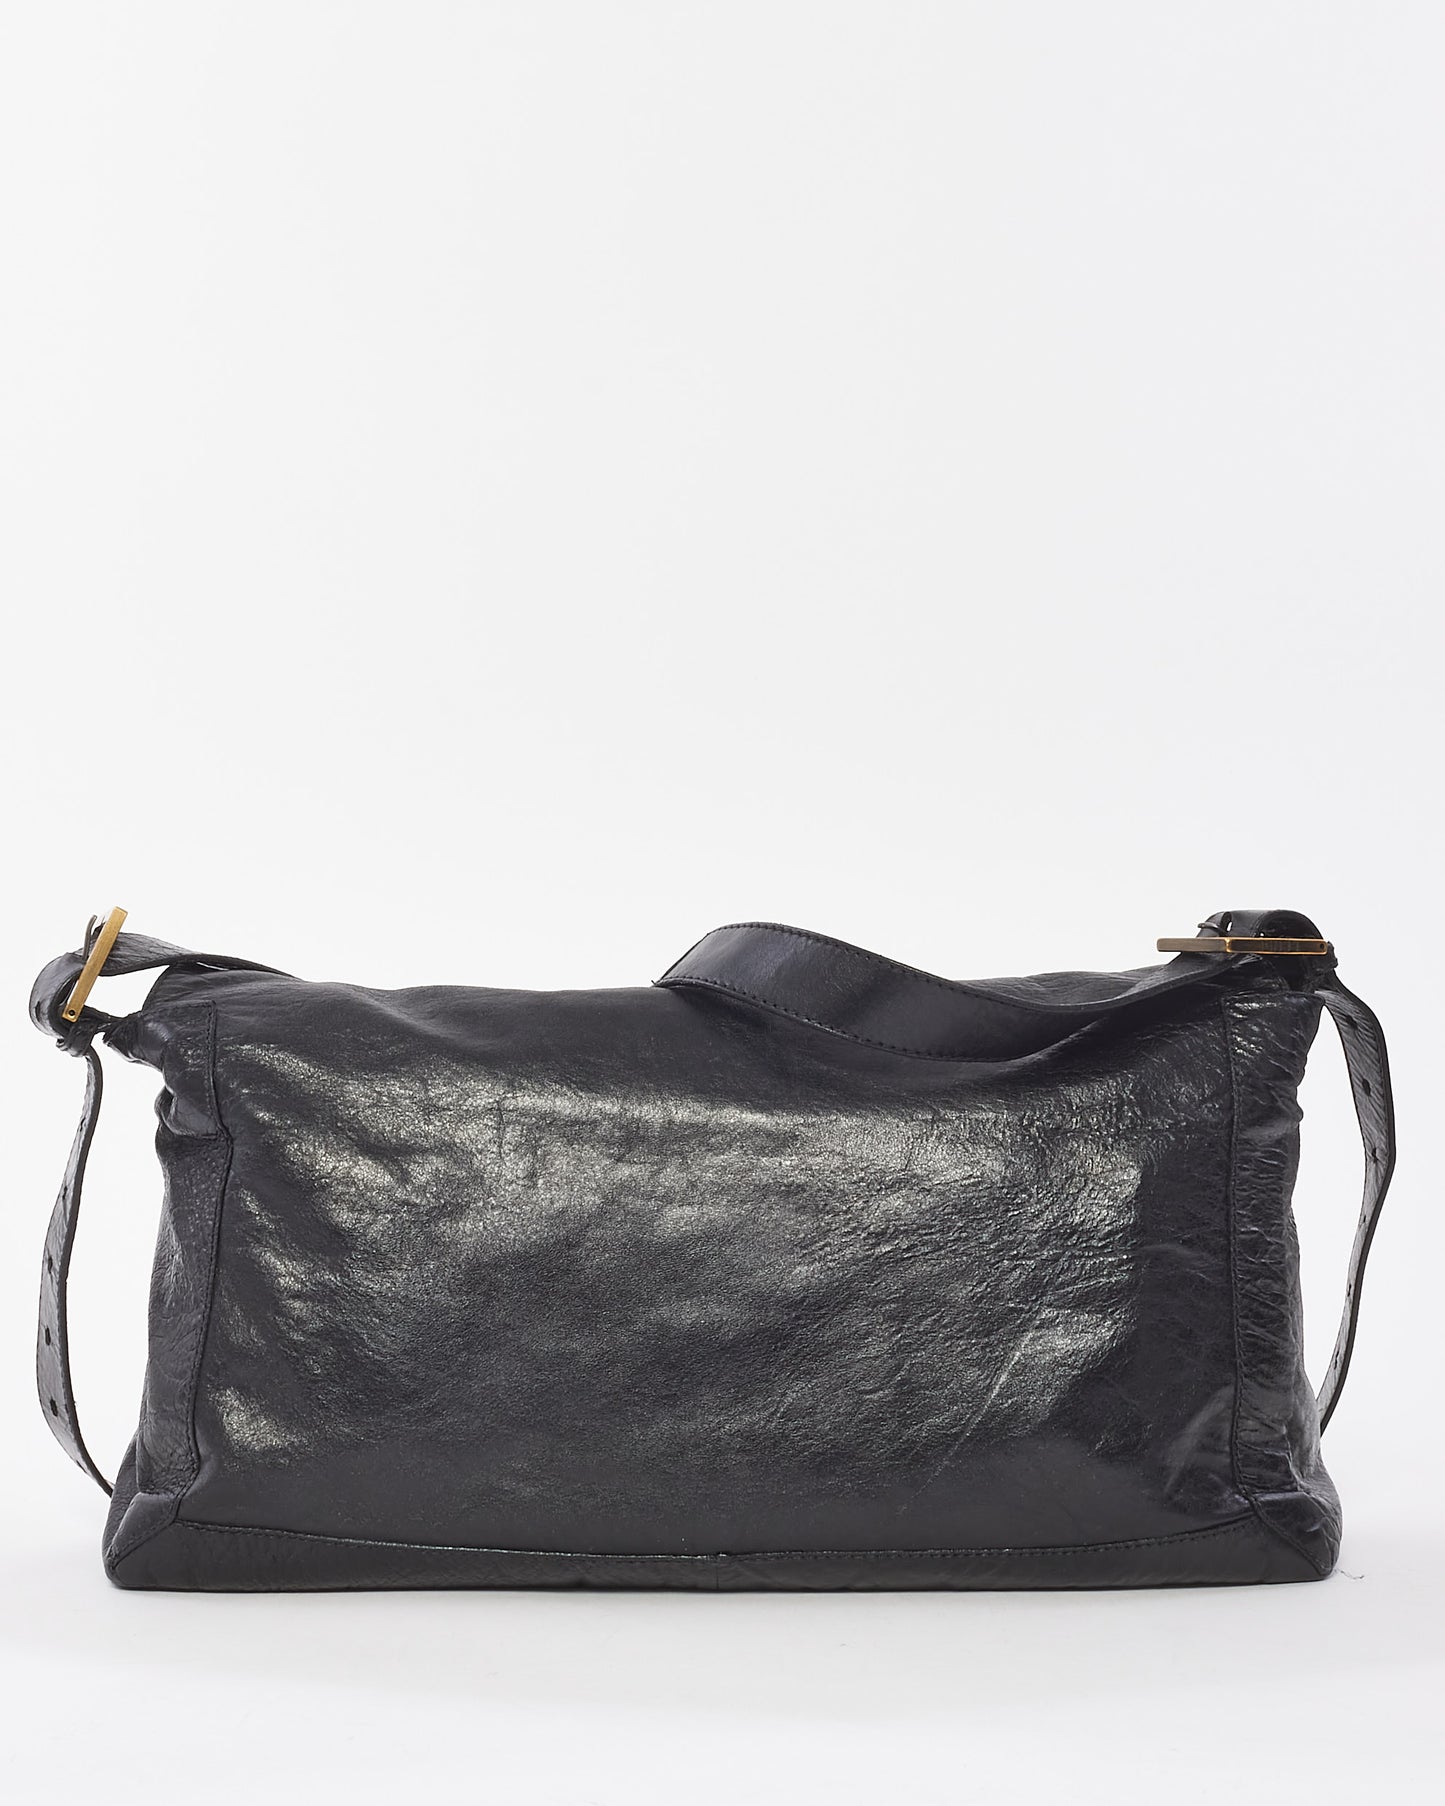 Fendi Vintage Black Leather Whipstitch Large Baguette Crossbody Bag